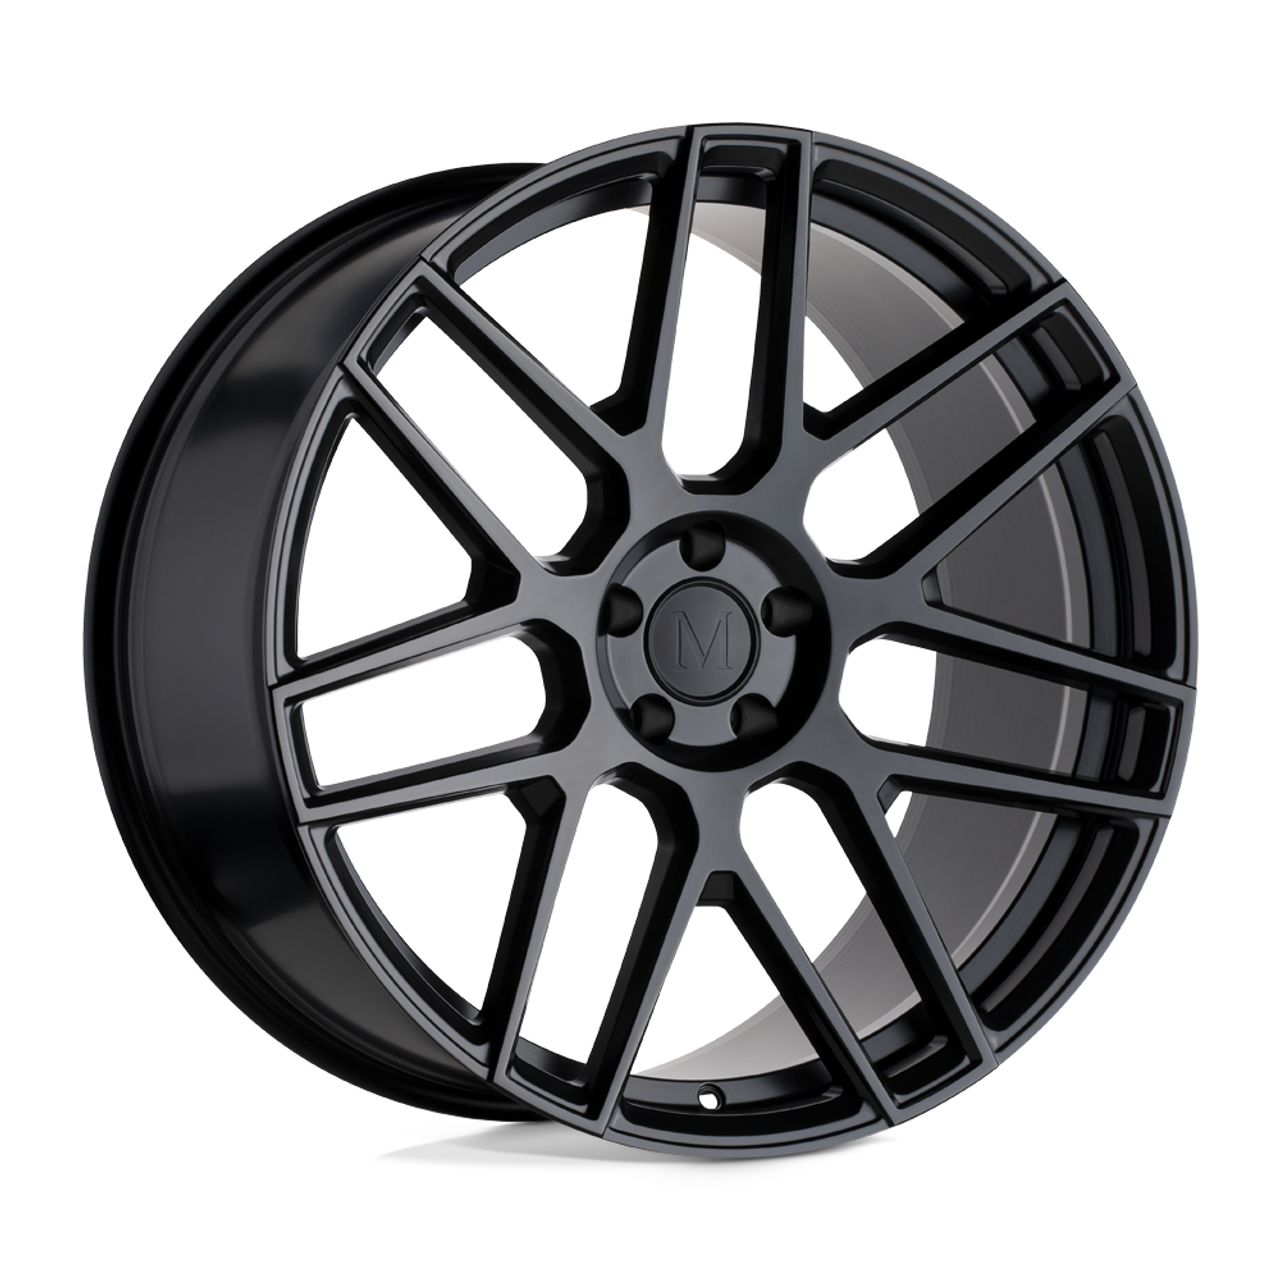 Mandrus Miglia 22x10 5x112 Semi Gloss Black Rf Wheel 22" 46mm Rim